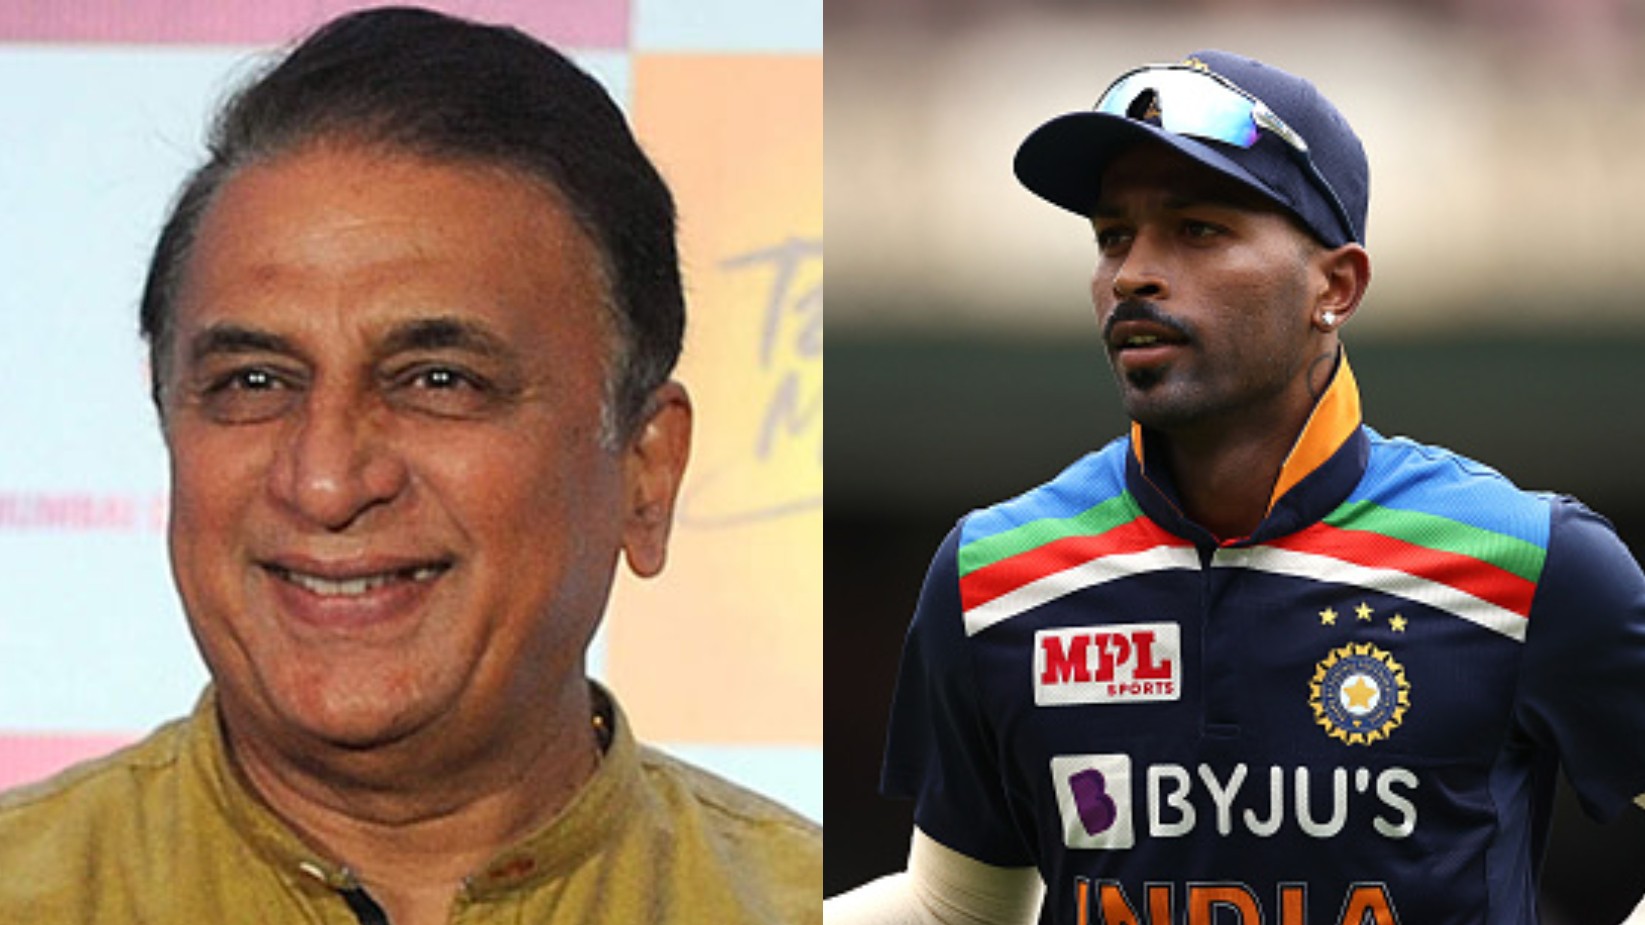 AUS v IND 2020-21: Sunil Gavaskar hails Hardik Pandya for his mature showing in ODI series